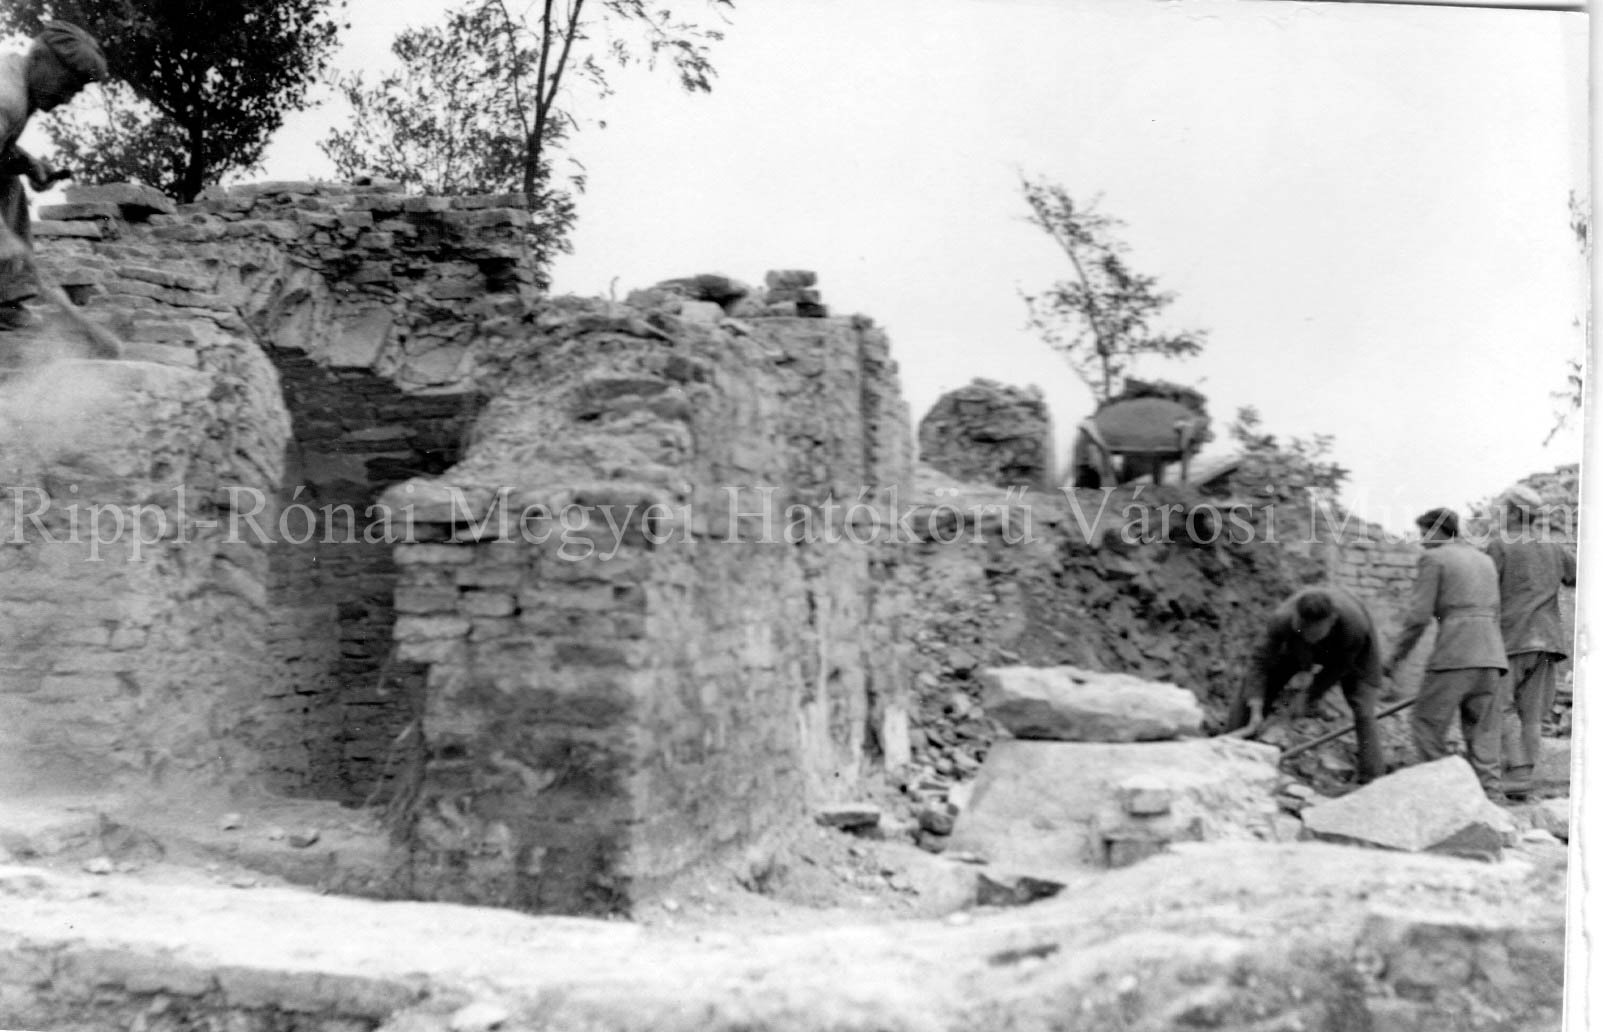 A kaposszentjakabi kolostor ásatása - A megtisztított falak (Rippl-Rónai Múzeum CC BY-NC-SA)